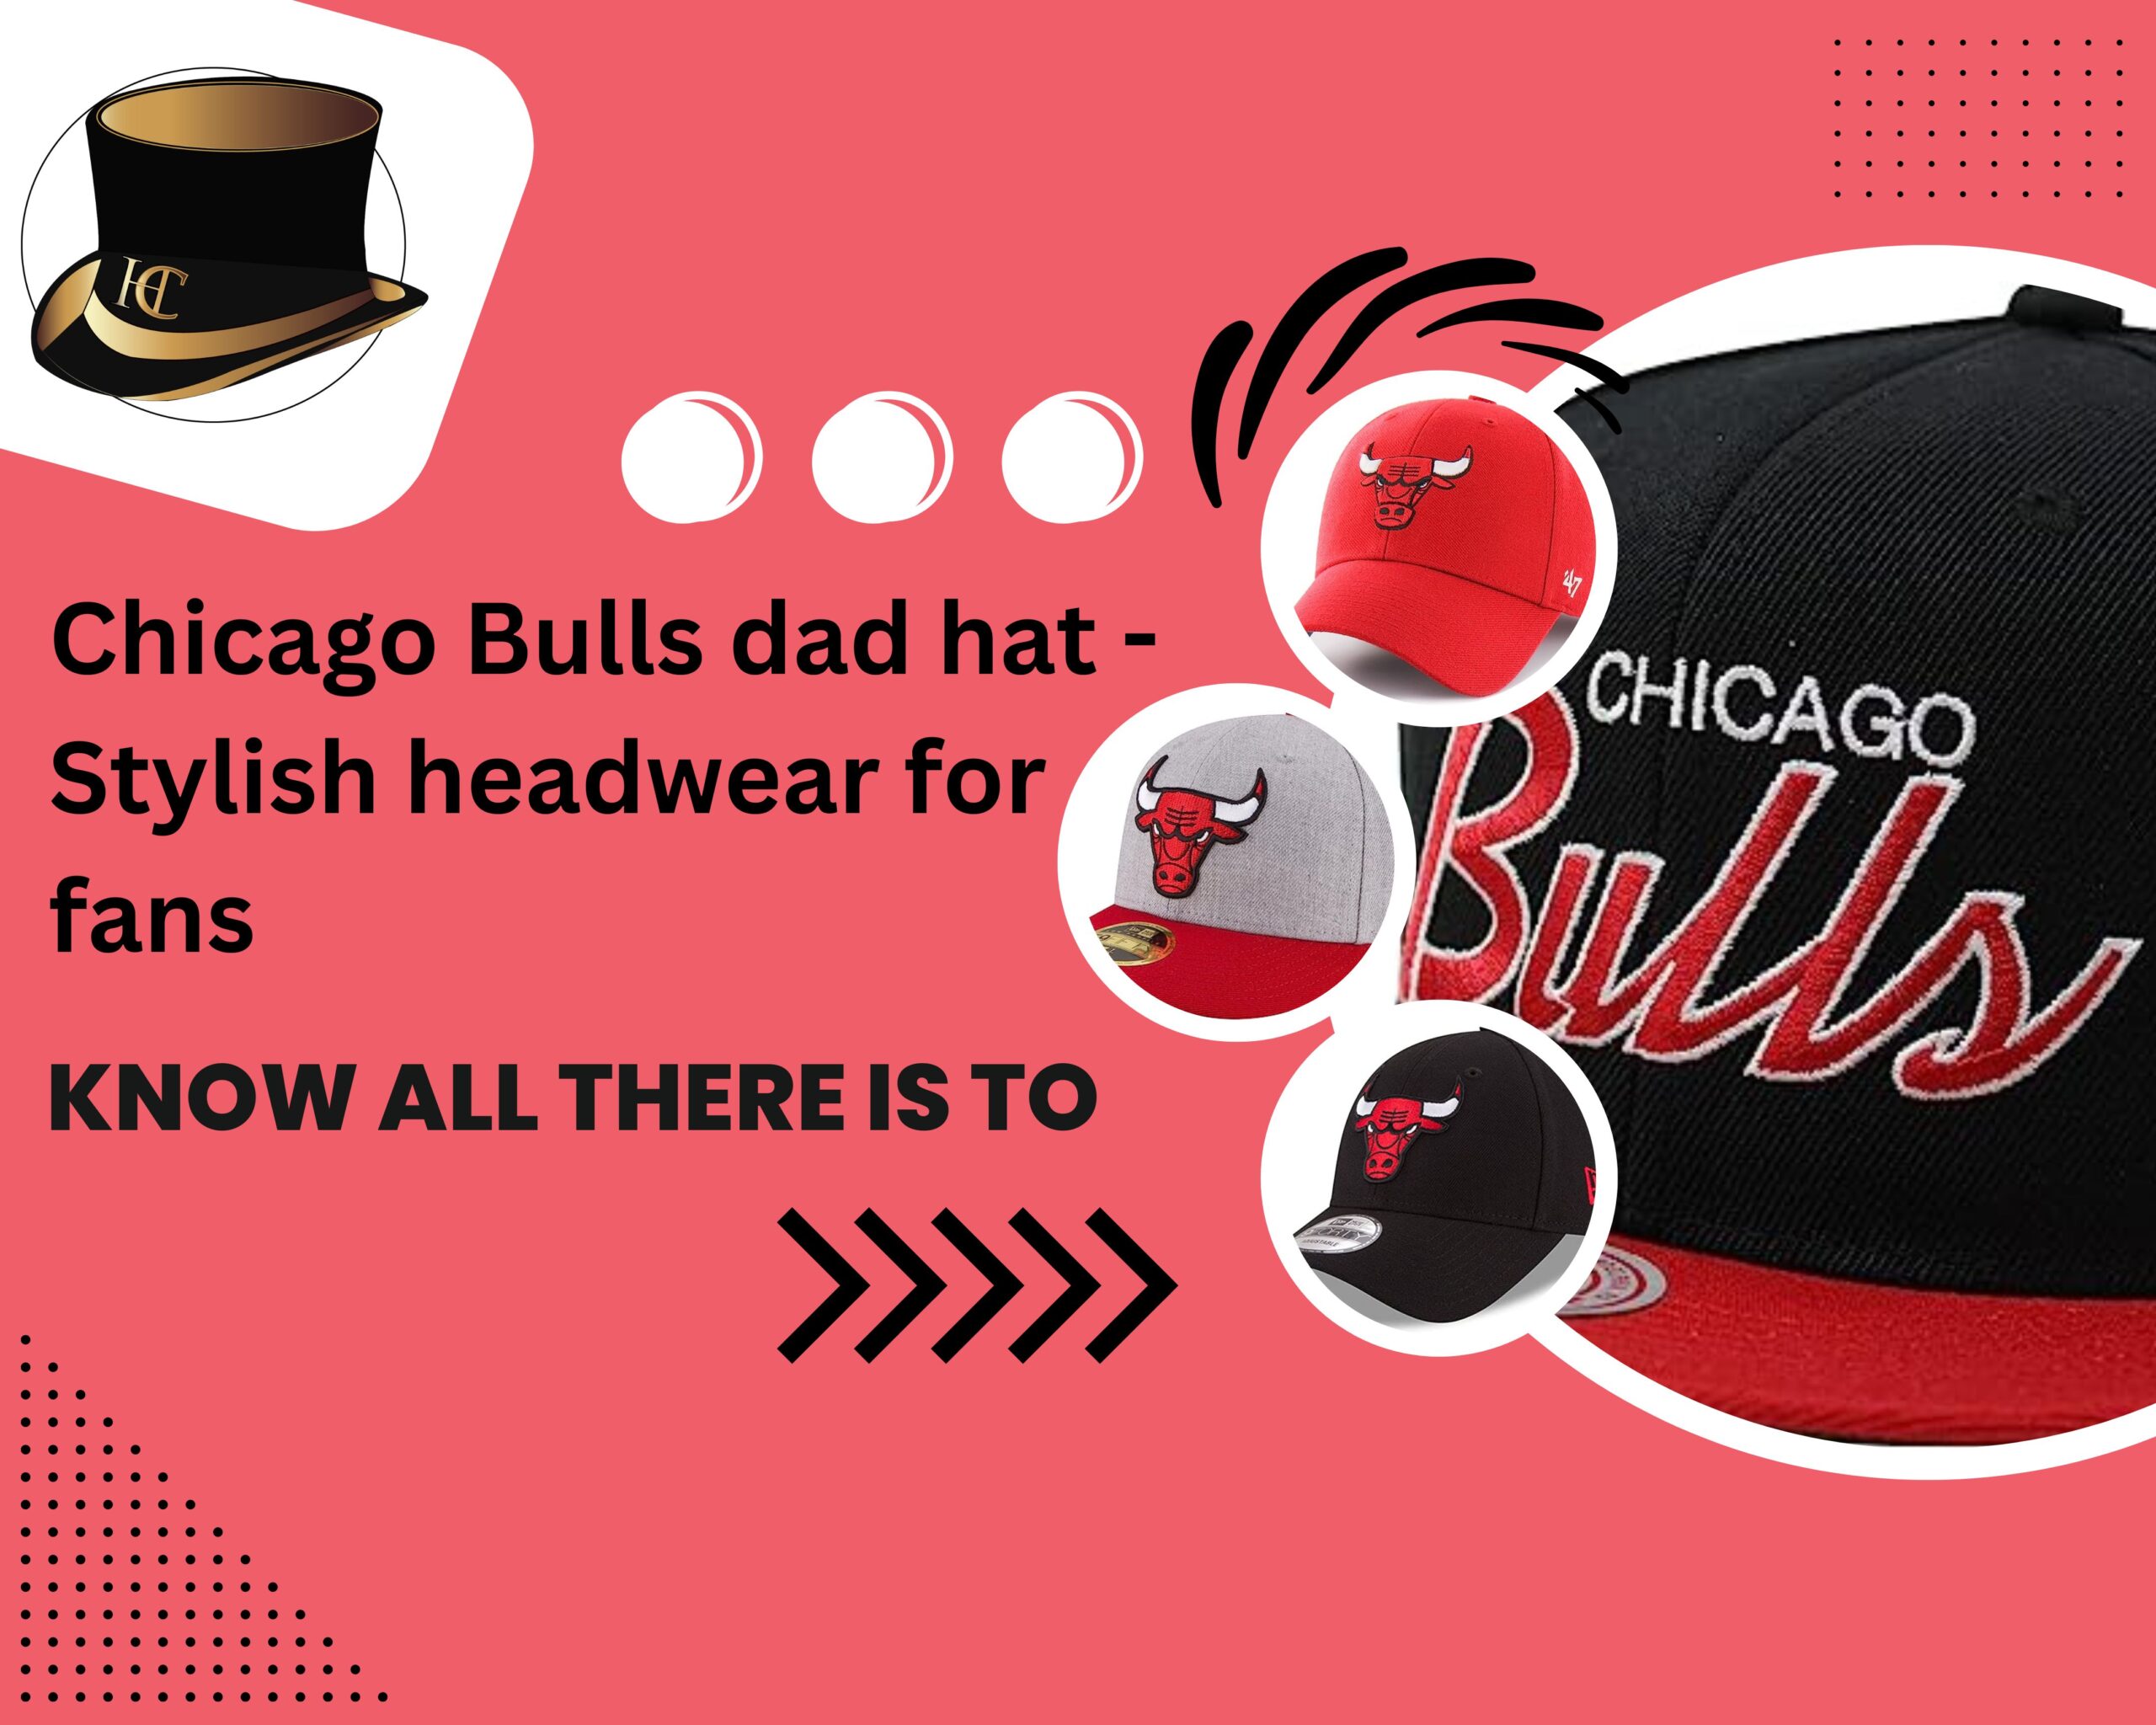 Chicago Bulls dad hat - Stylish headwear for fans